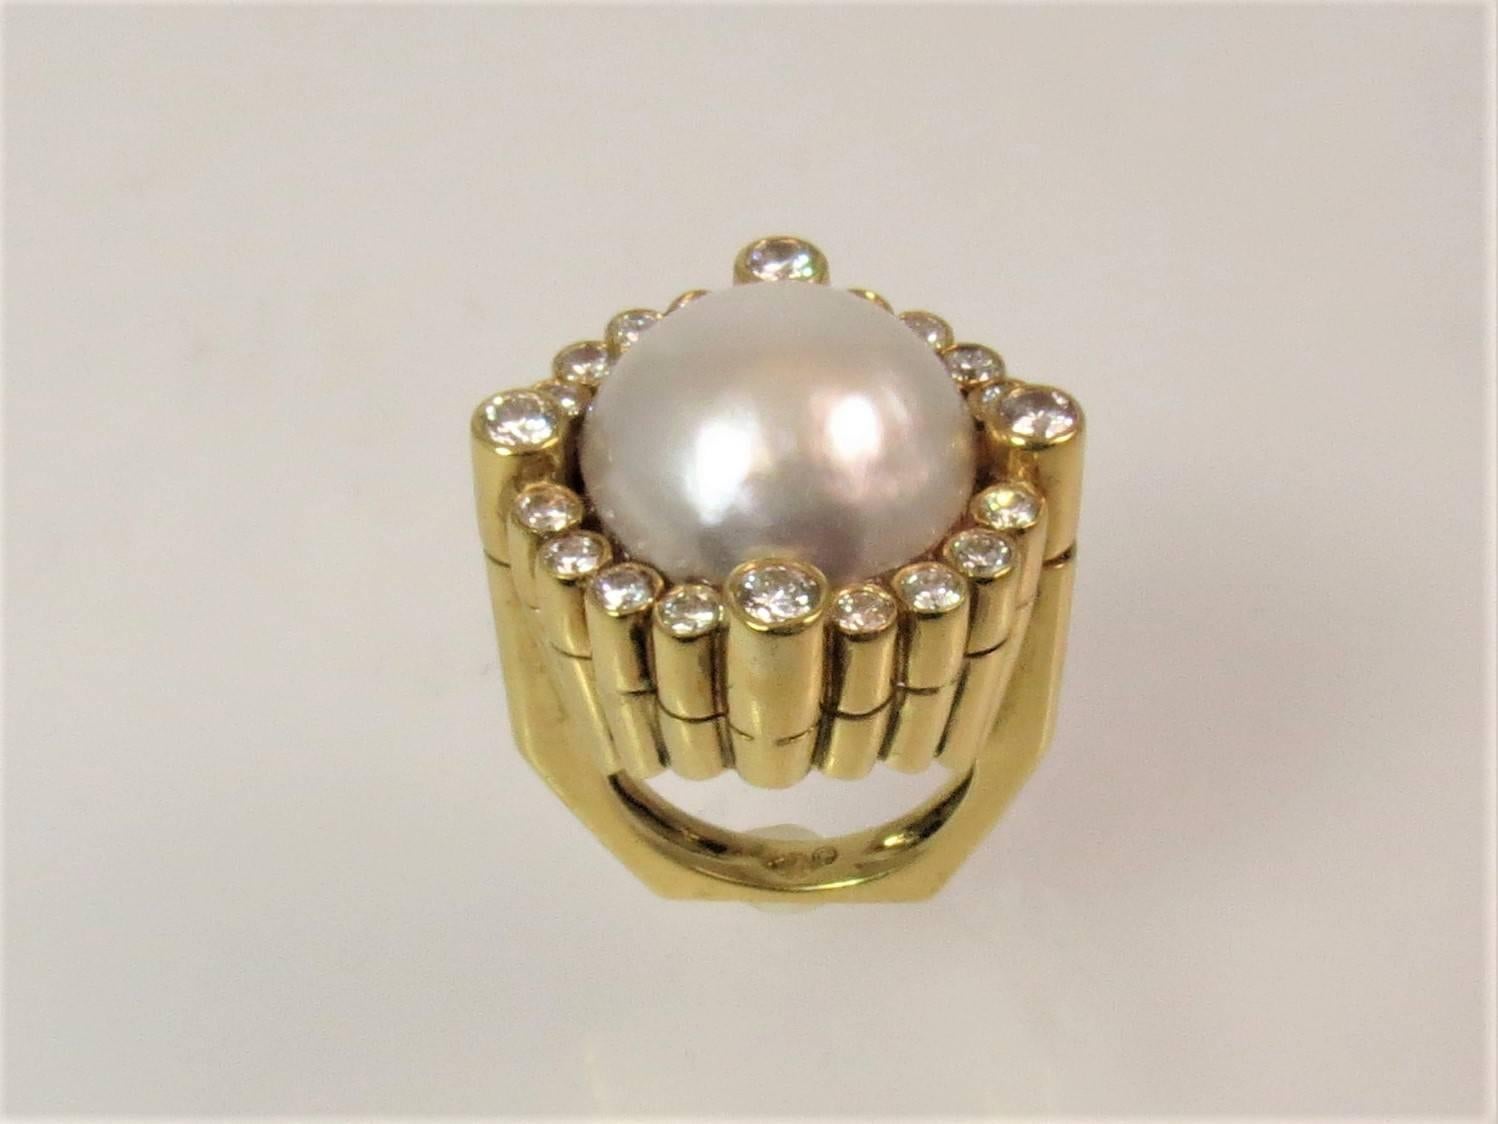 bague en or jaune 18K, avec perle Mabe mesurant 15.5mm et 20 diamants ronds pleine taille pesant 1.29cts, couleur G-H, pureté VS
Taille du doigt 5,25. Peut être dimensionné